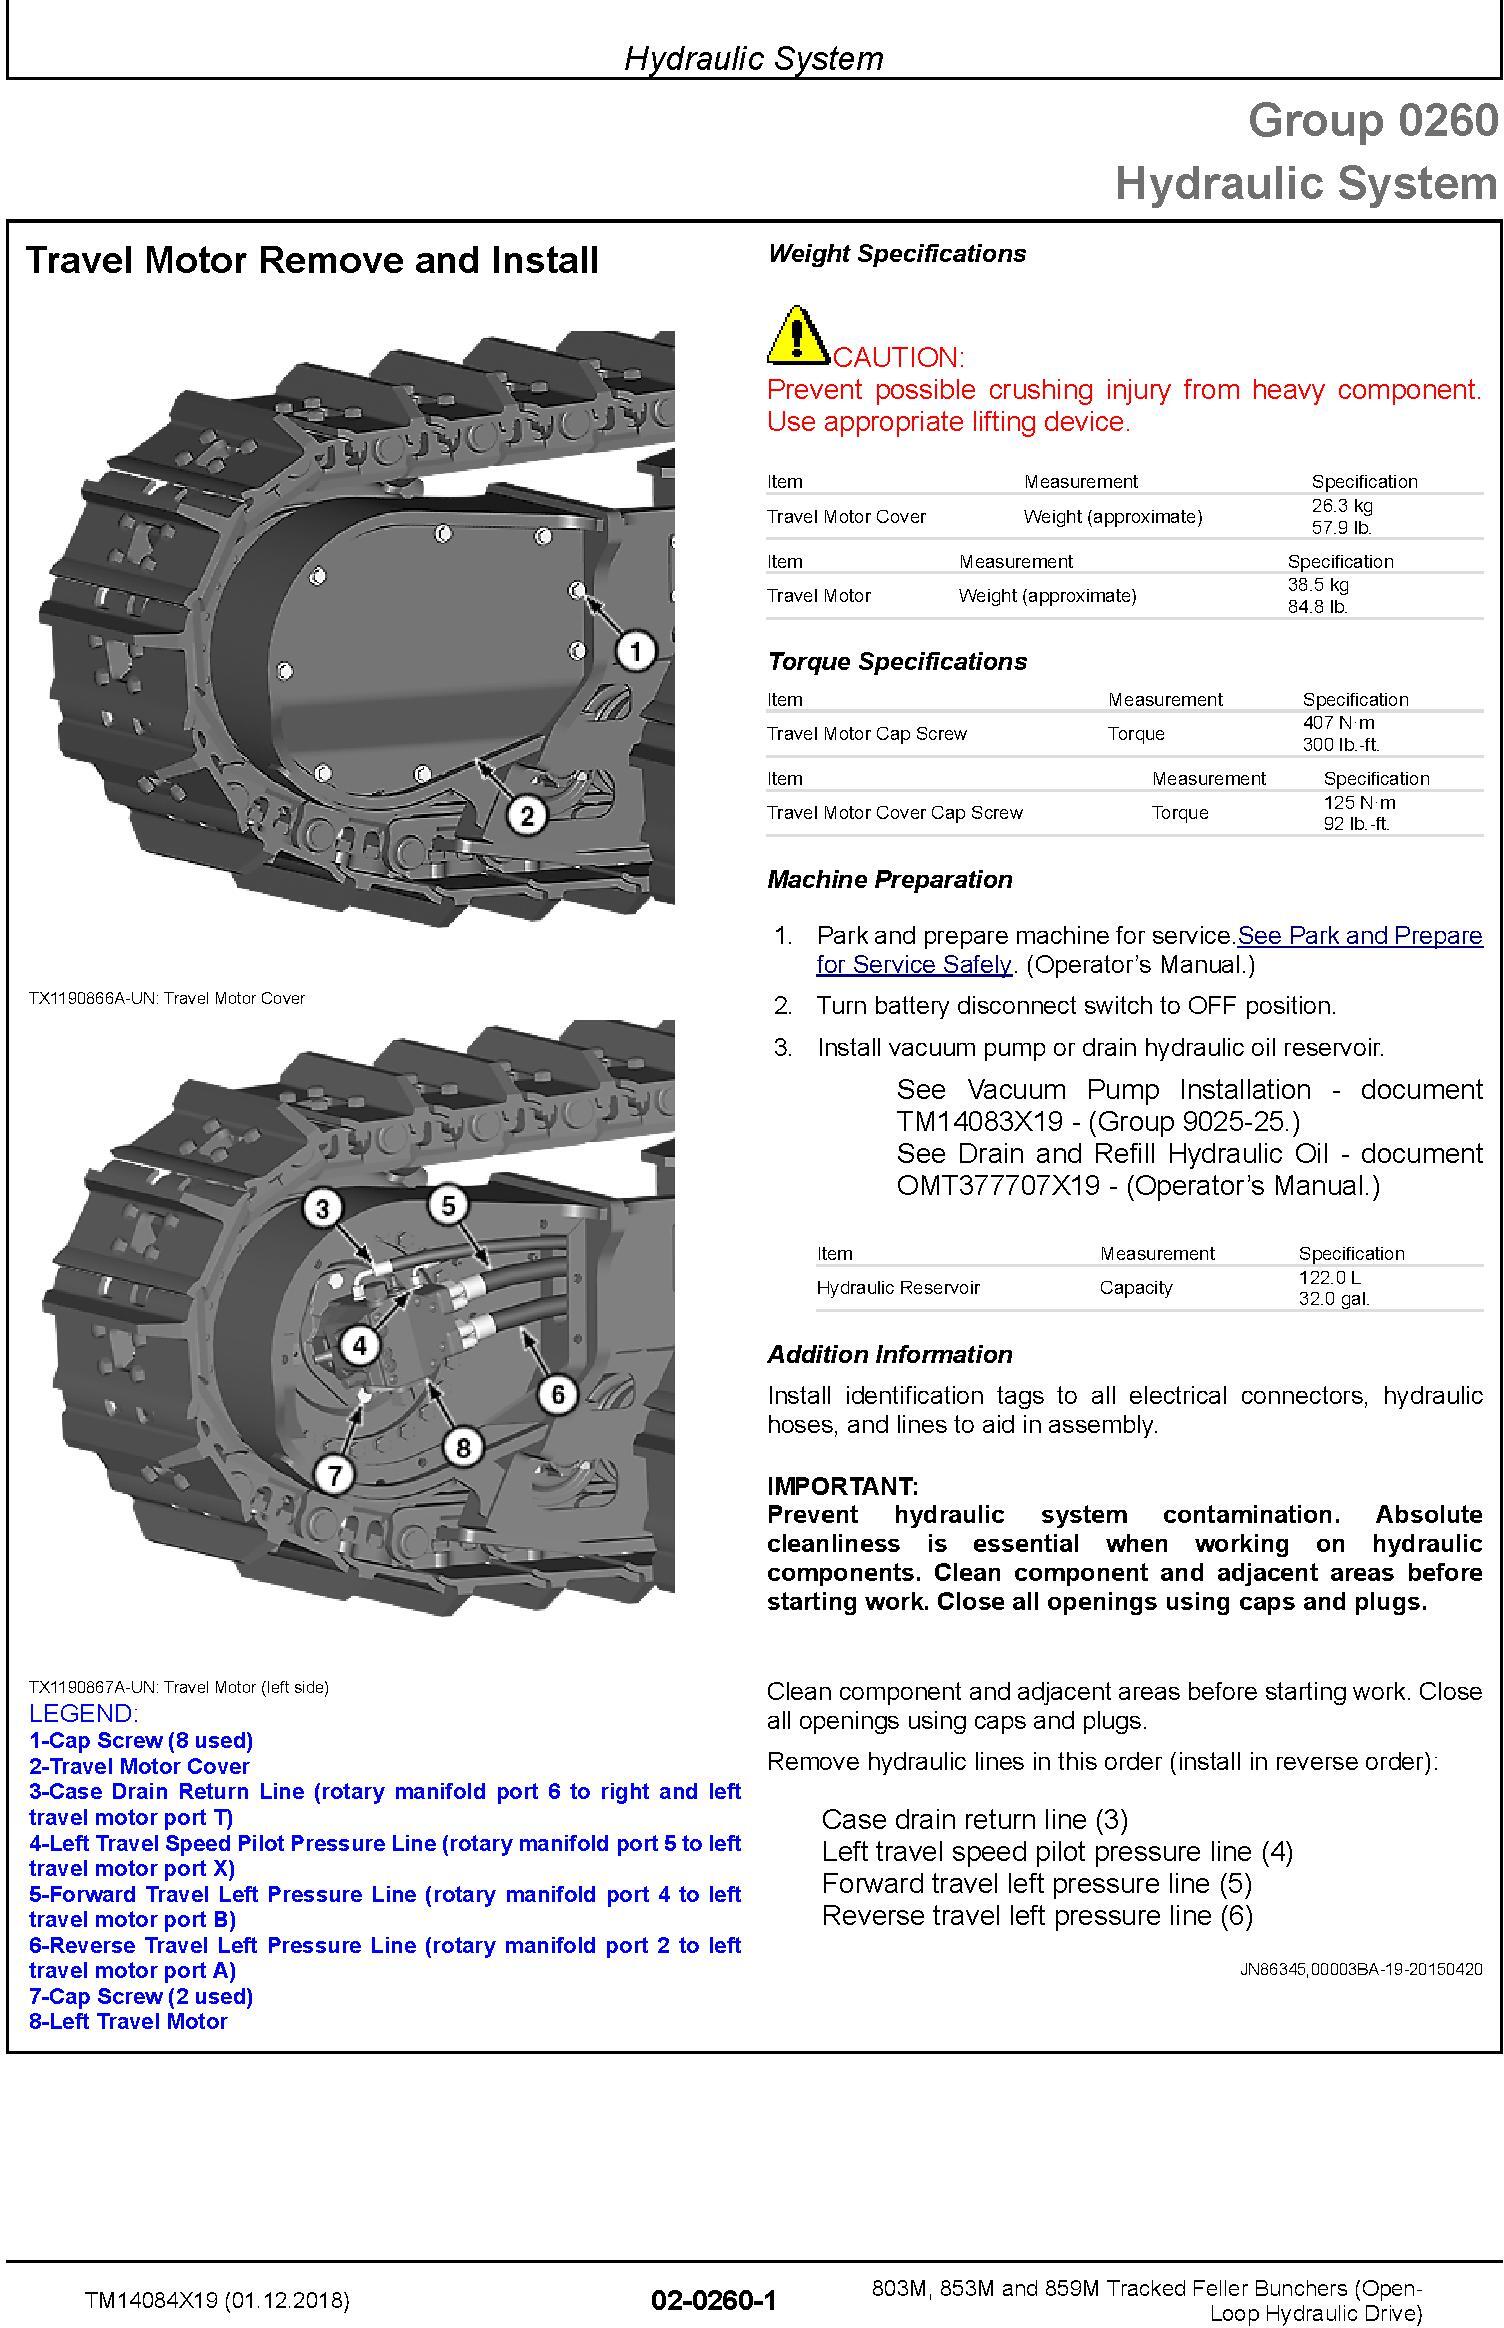 John Deere 803M,853M,859M (SN.F293917-,L343918-) Feller Buncher (Open-Loop) Repair Manual TM14084X19 - 1